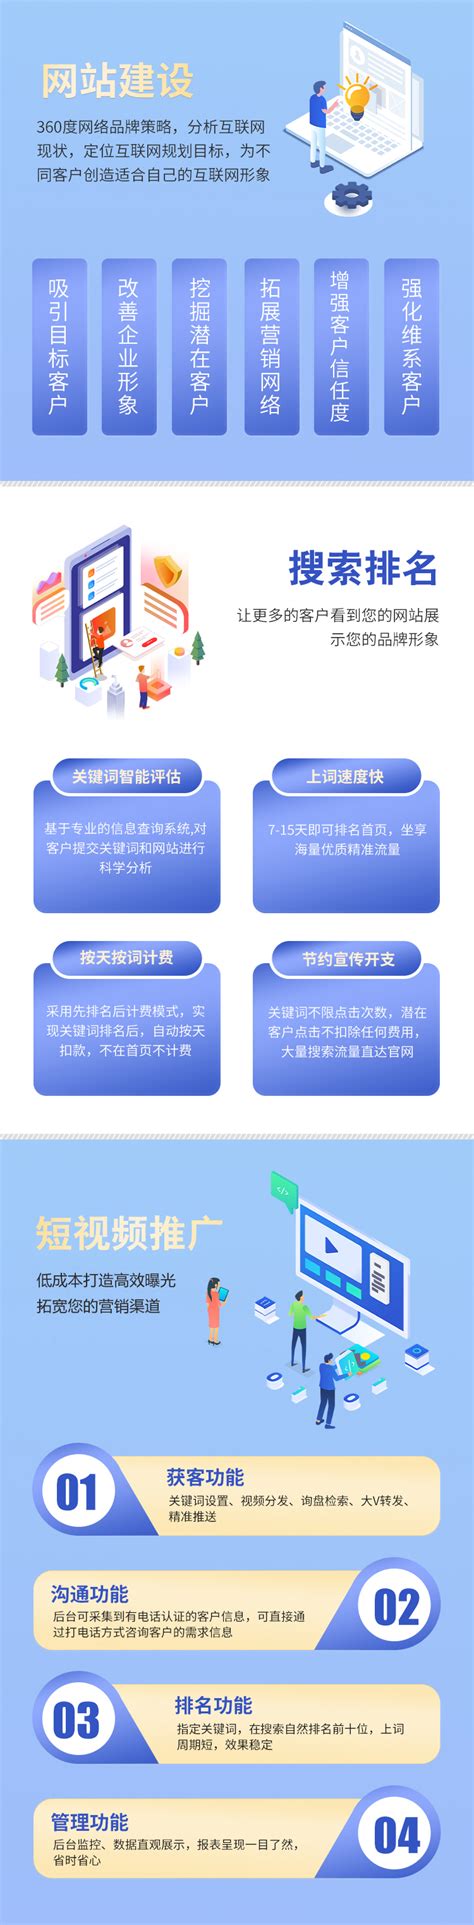 重庆网站建设推广网络公司